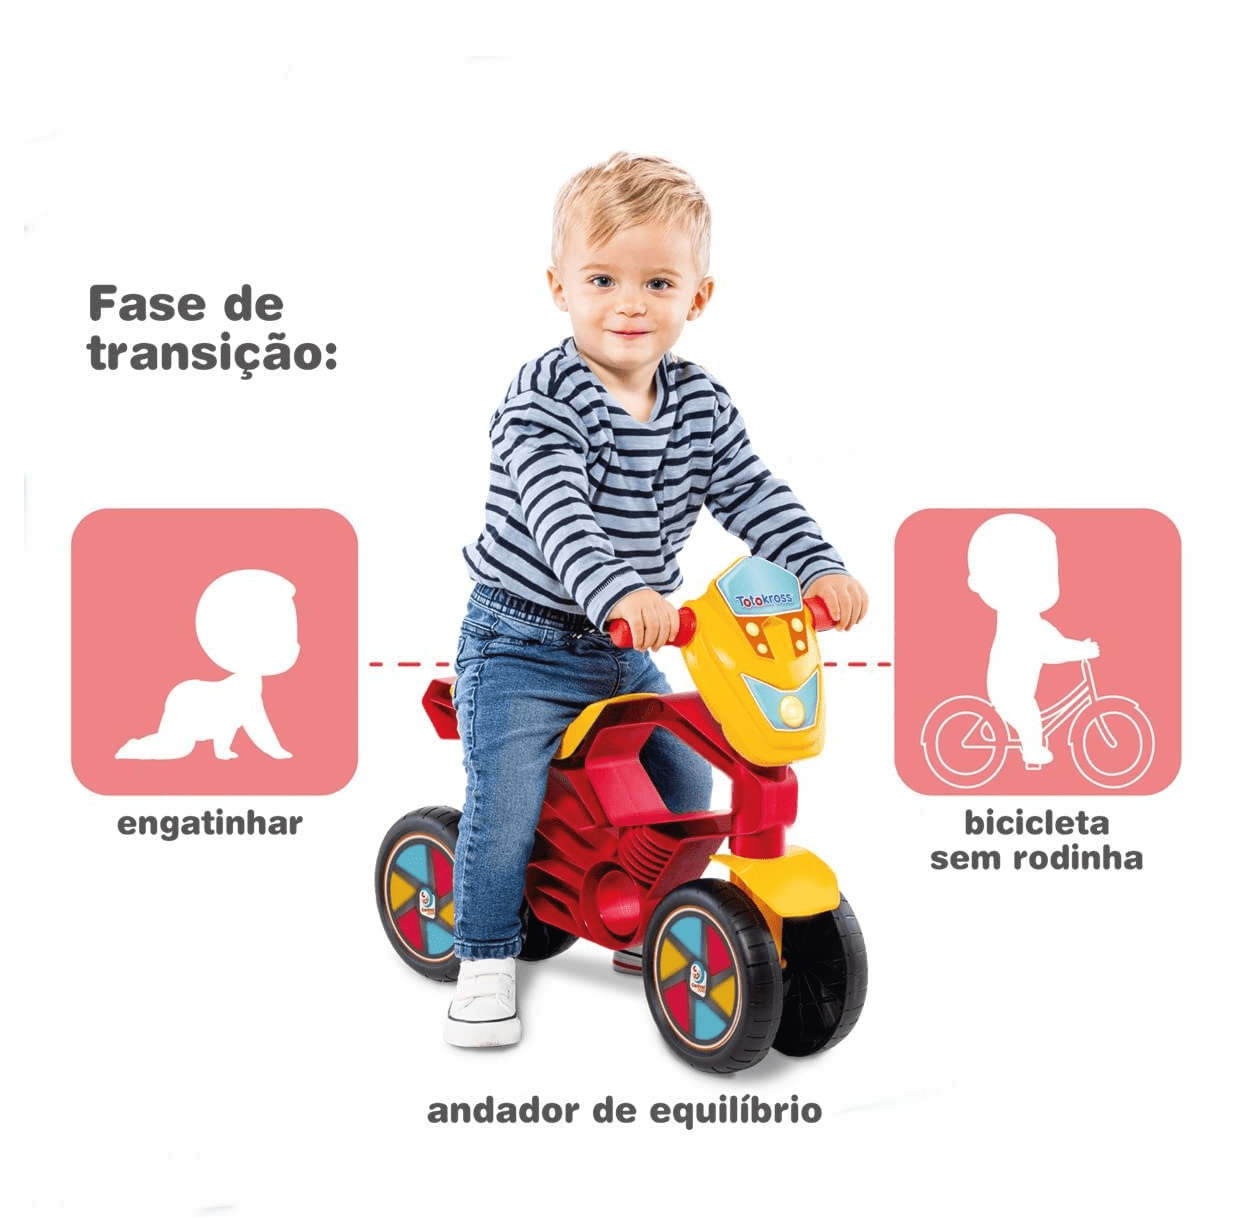 Motoca Infantil de Equilíbrio - Totokross - Rosa - Cardoso